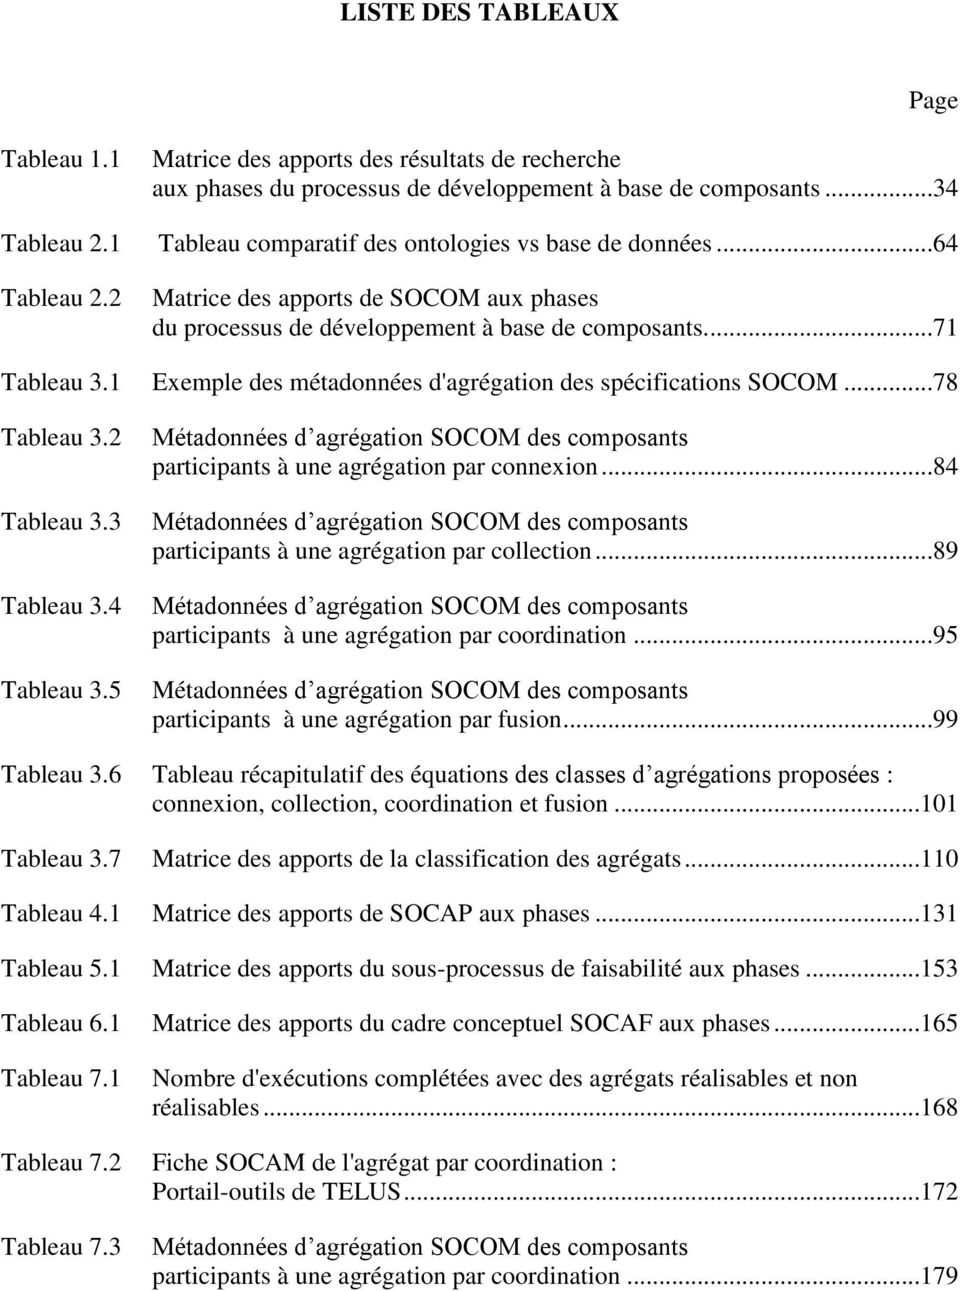 1 Exemple des métadonnées d'agrégation des spécifications SOCOM...78 Tableau 3.2 Tableau 3.3 Tableau 3.4 Tableau 3.